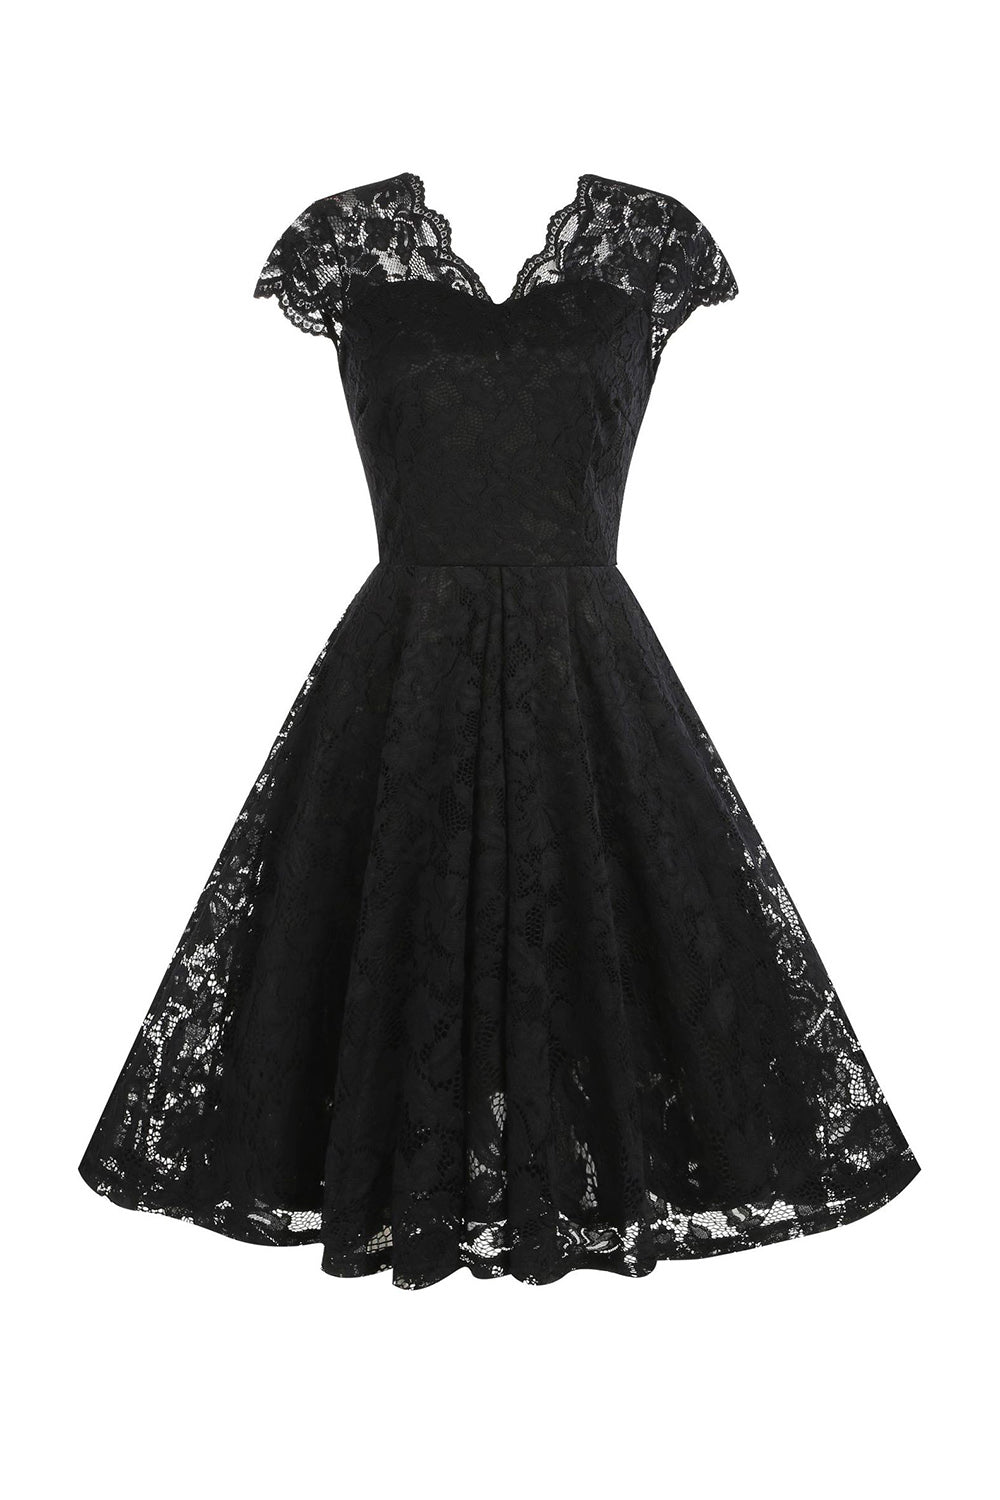 V Neck Black Lace Hepburn Style 1950s Dress